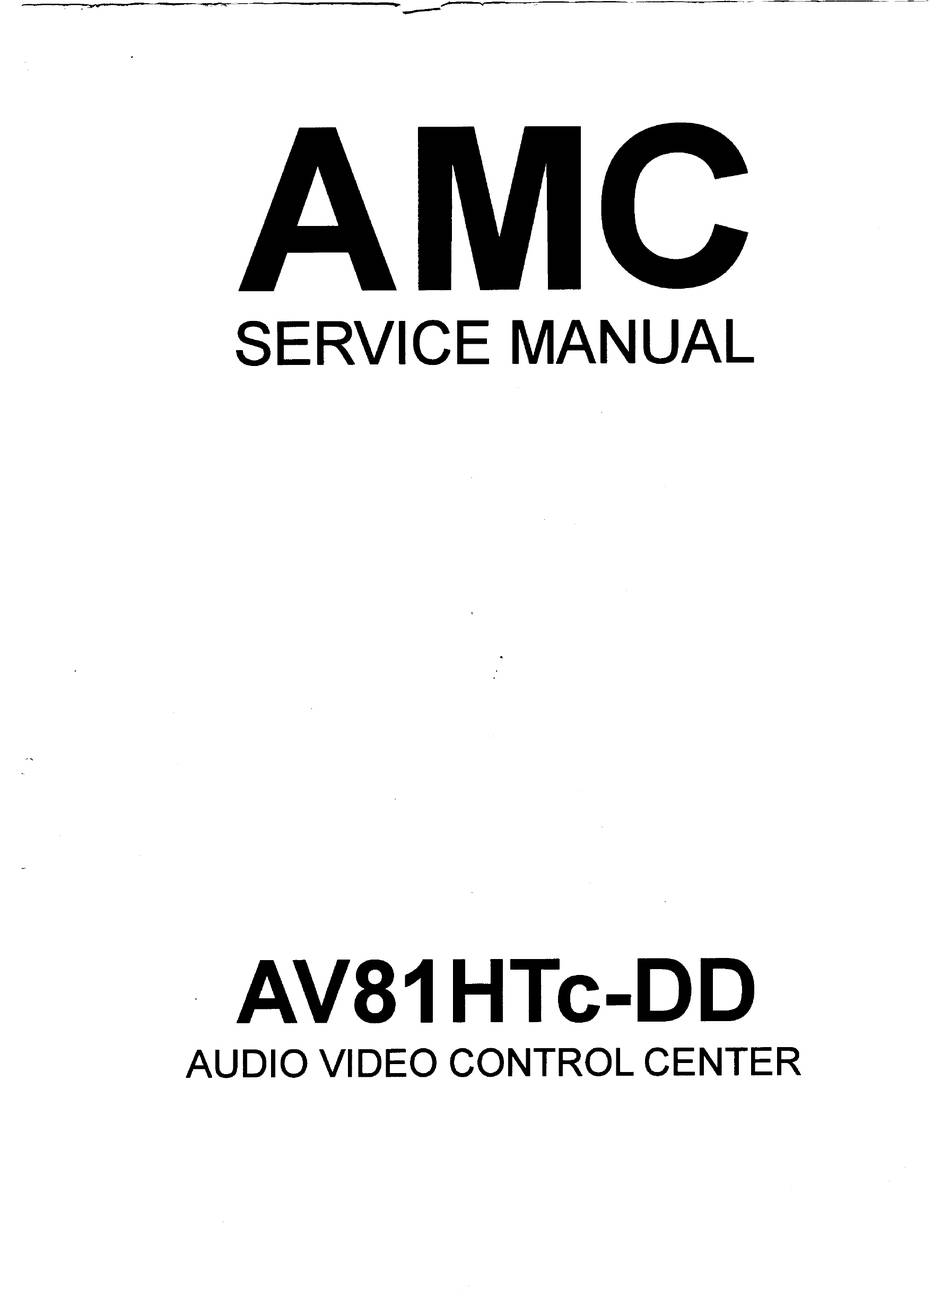 AMC AV81HTc-DD